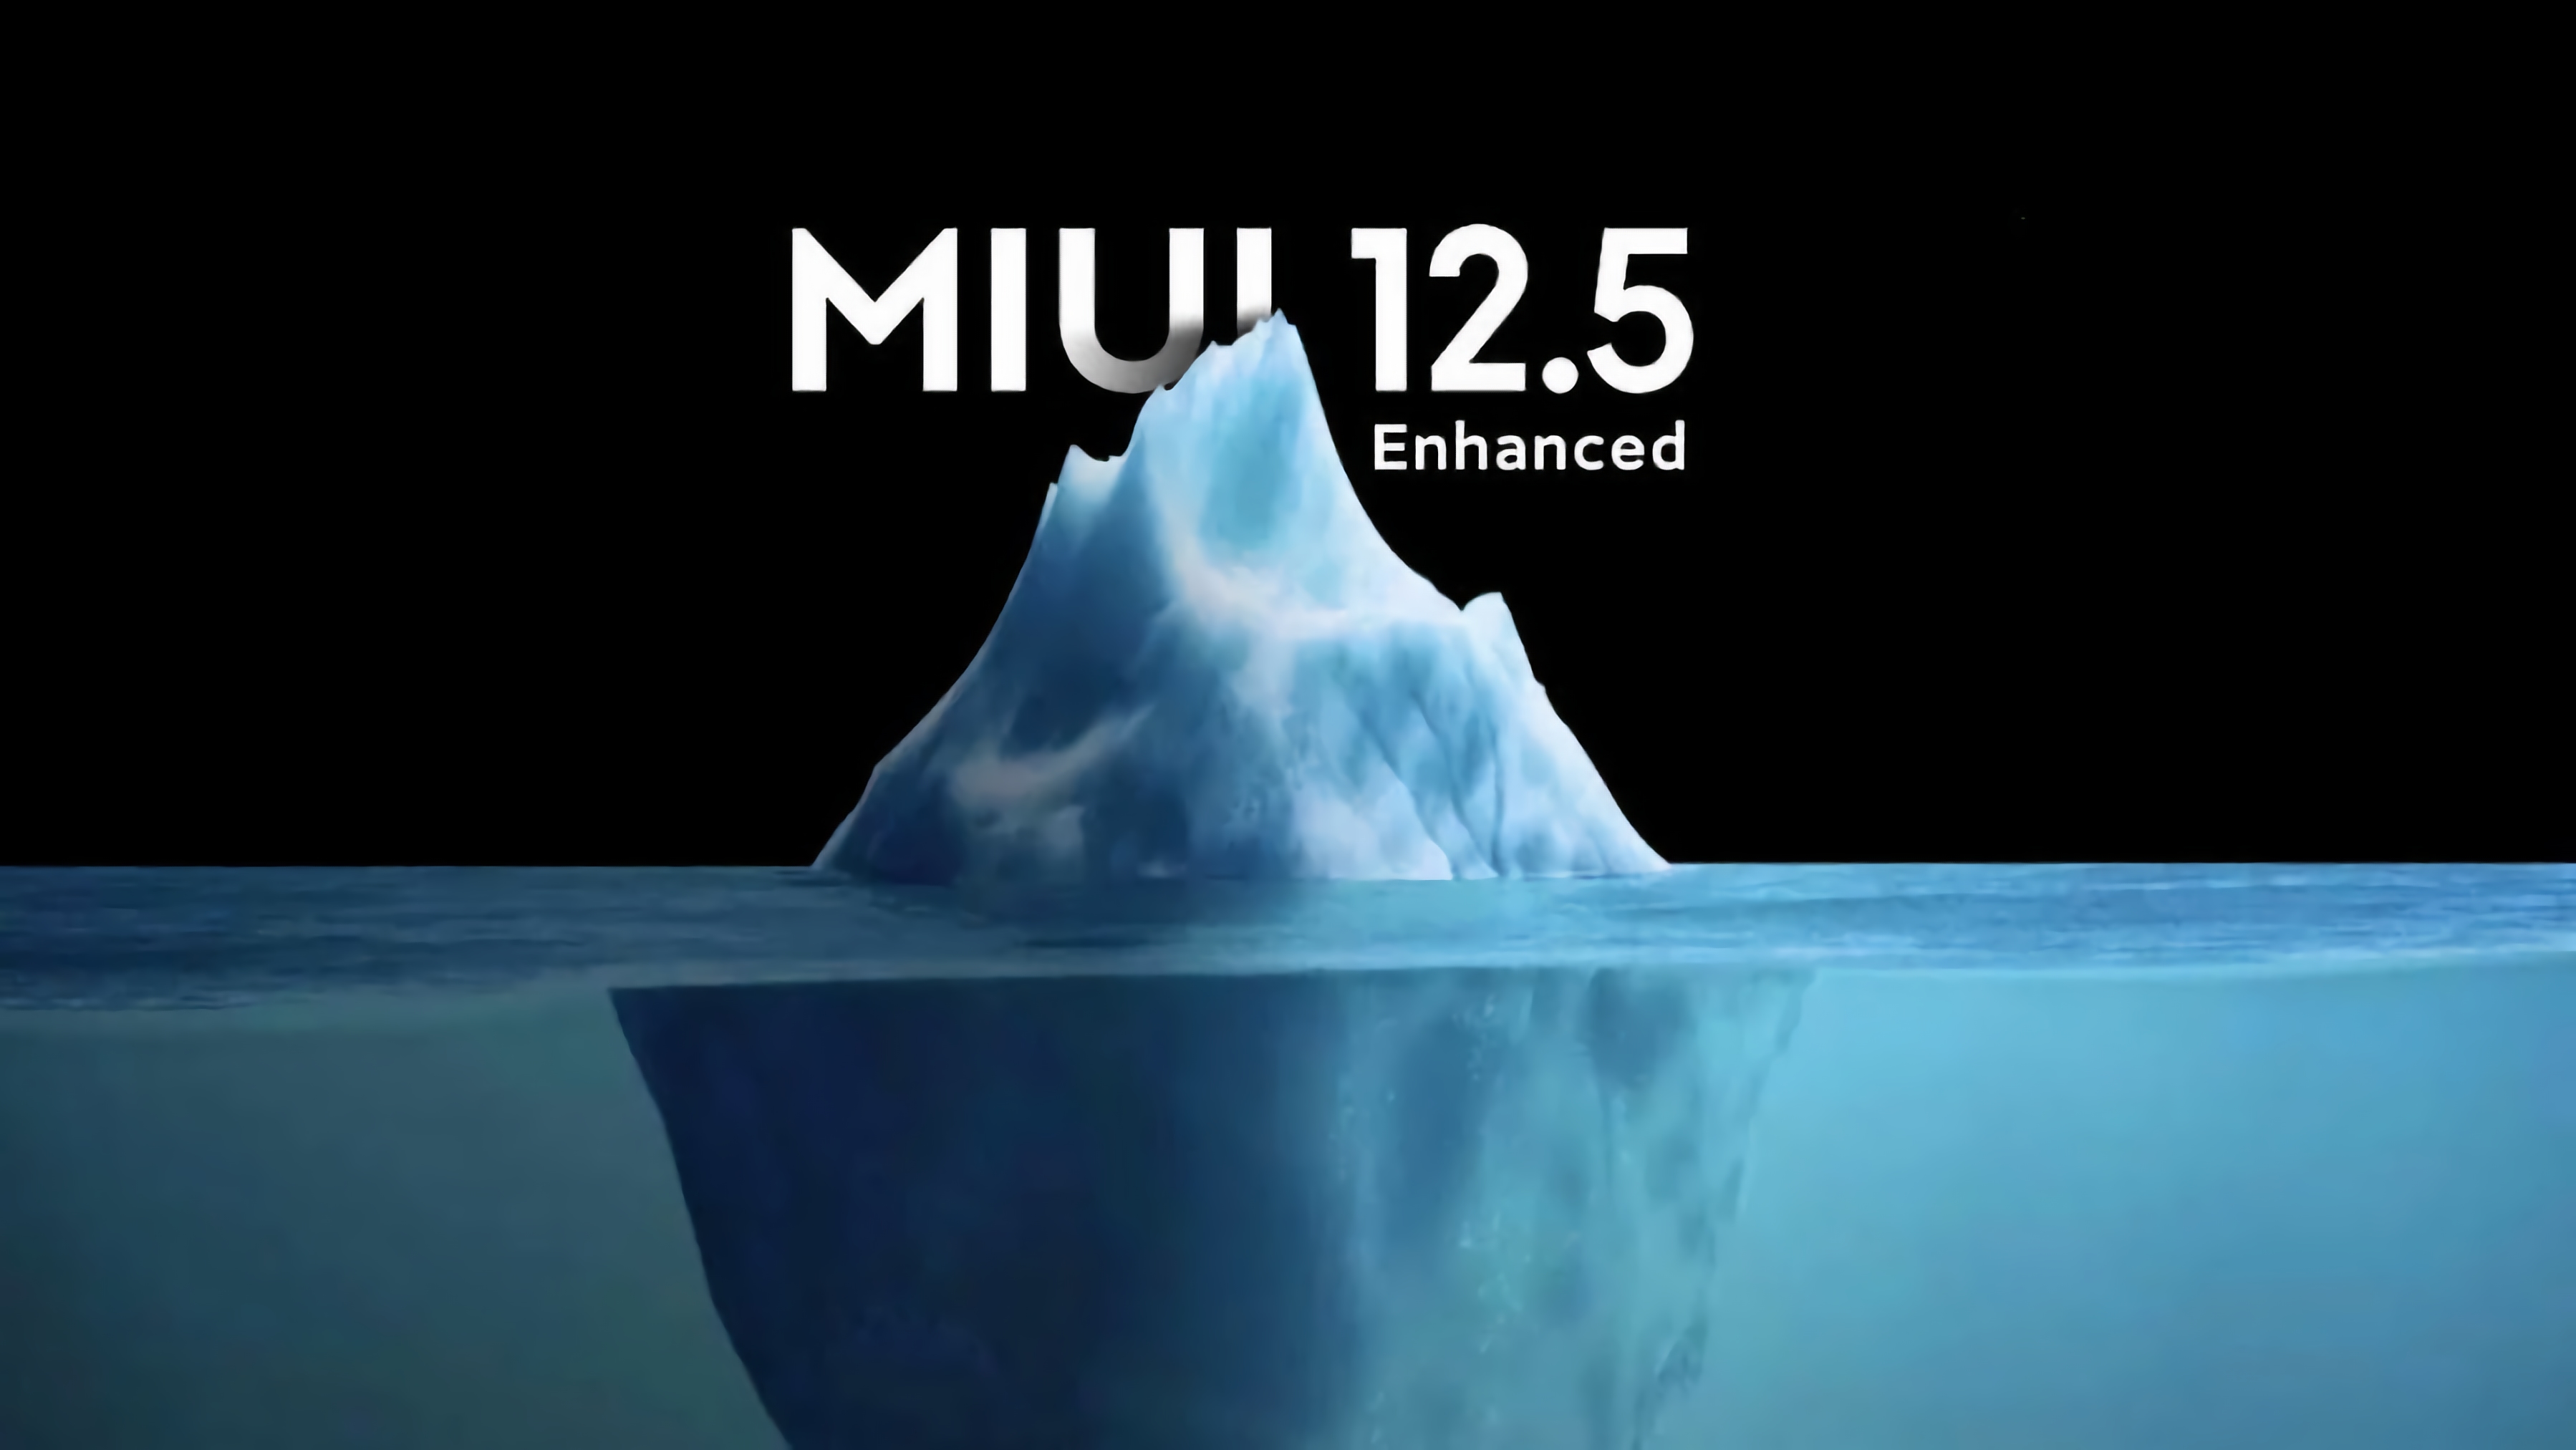 Welche Redmi-Smartphones das MIUI 12.5 Enhanced Edition-Update nicht erhalten werden, ist bekannt